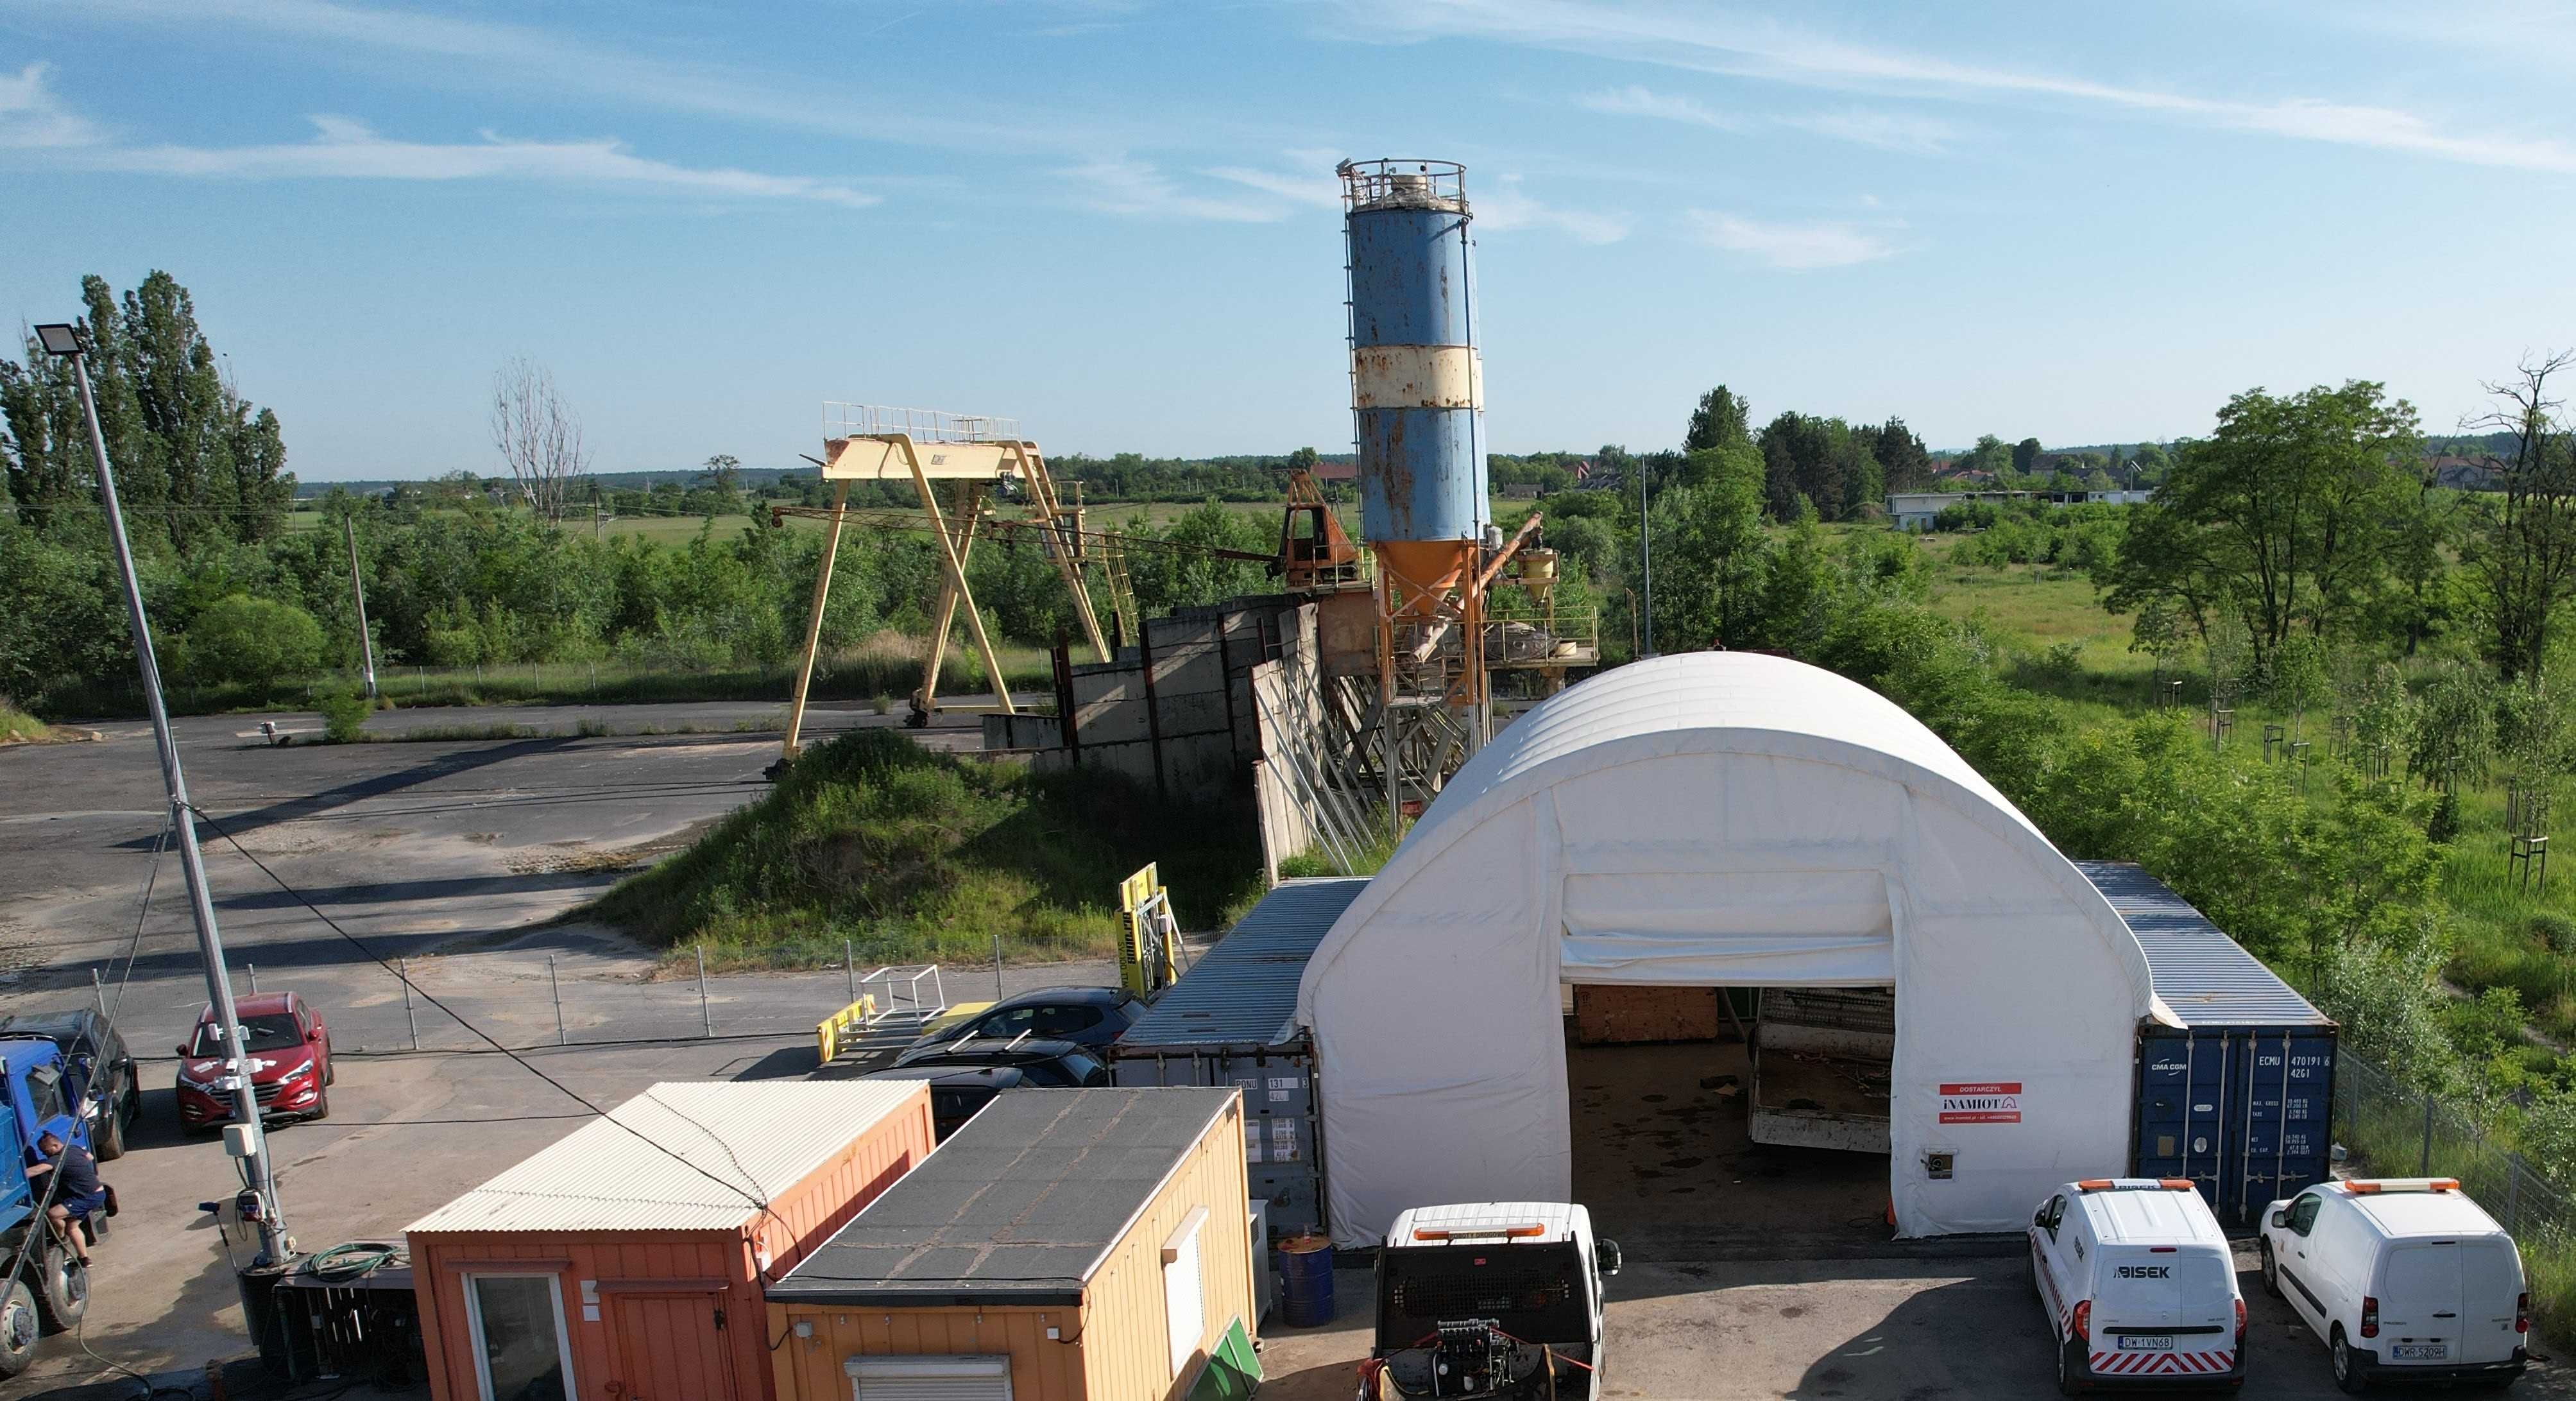 Namiot na kontener 10x12x3,6 dach kontenerowy zadaszenie  całoroczna